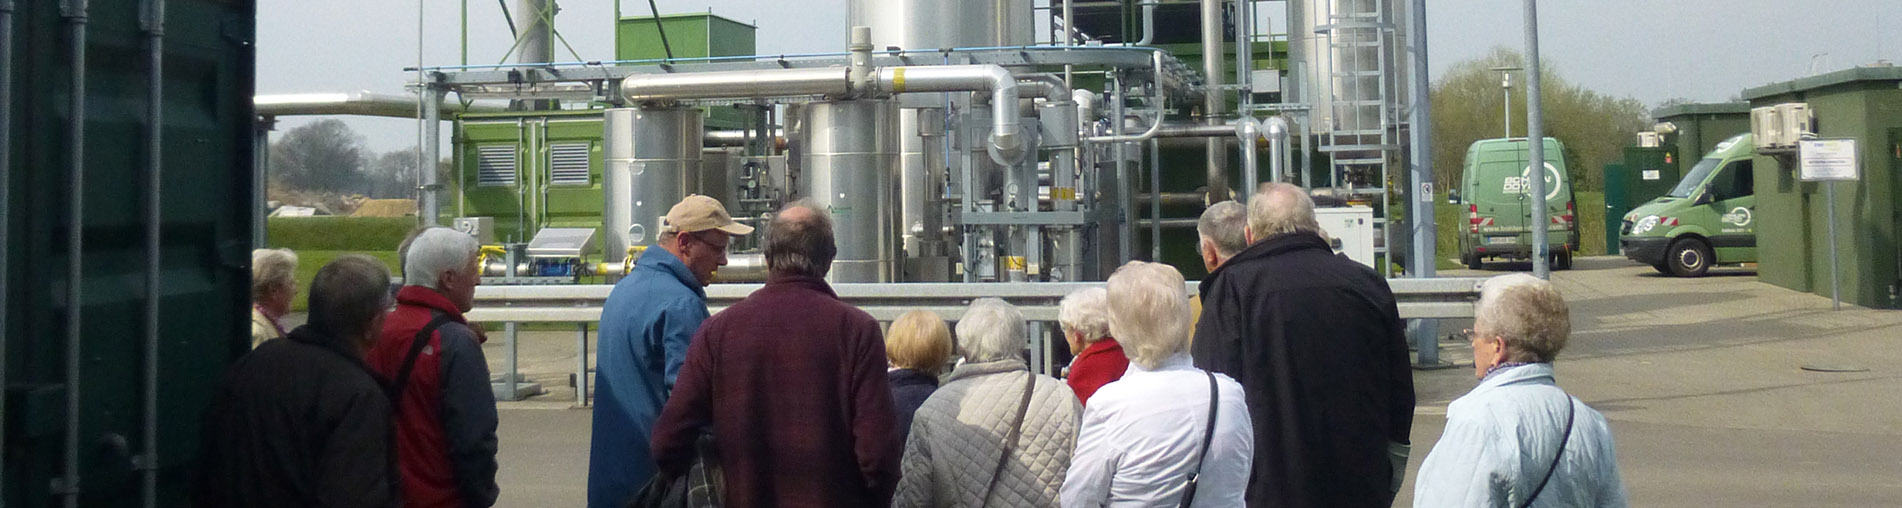 Besichtigung einer Biogasanlage